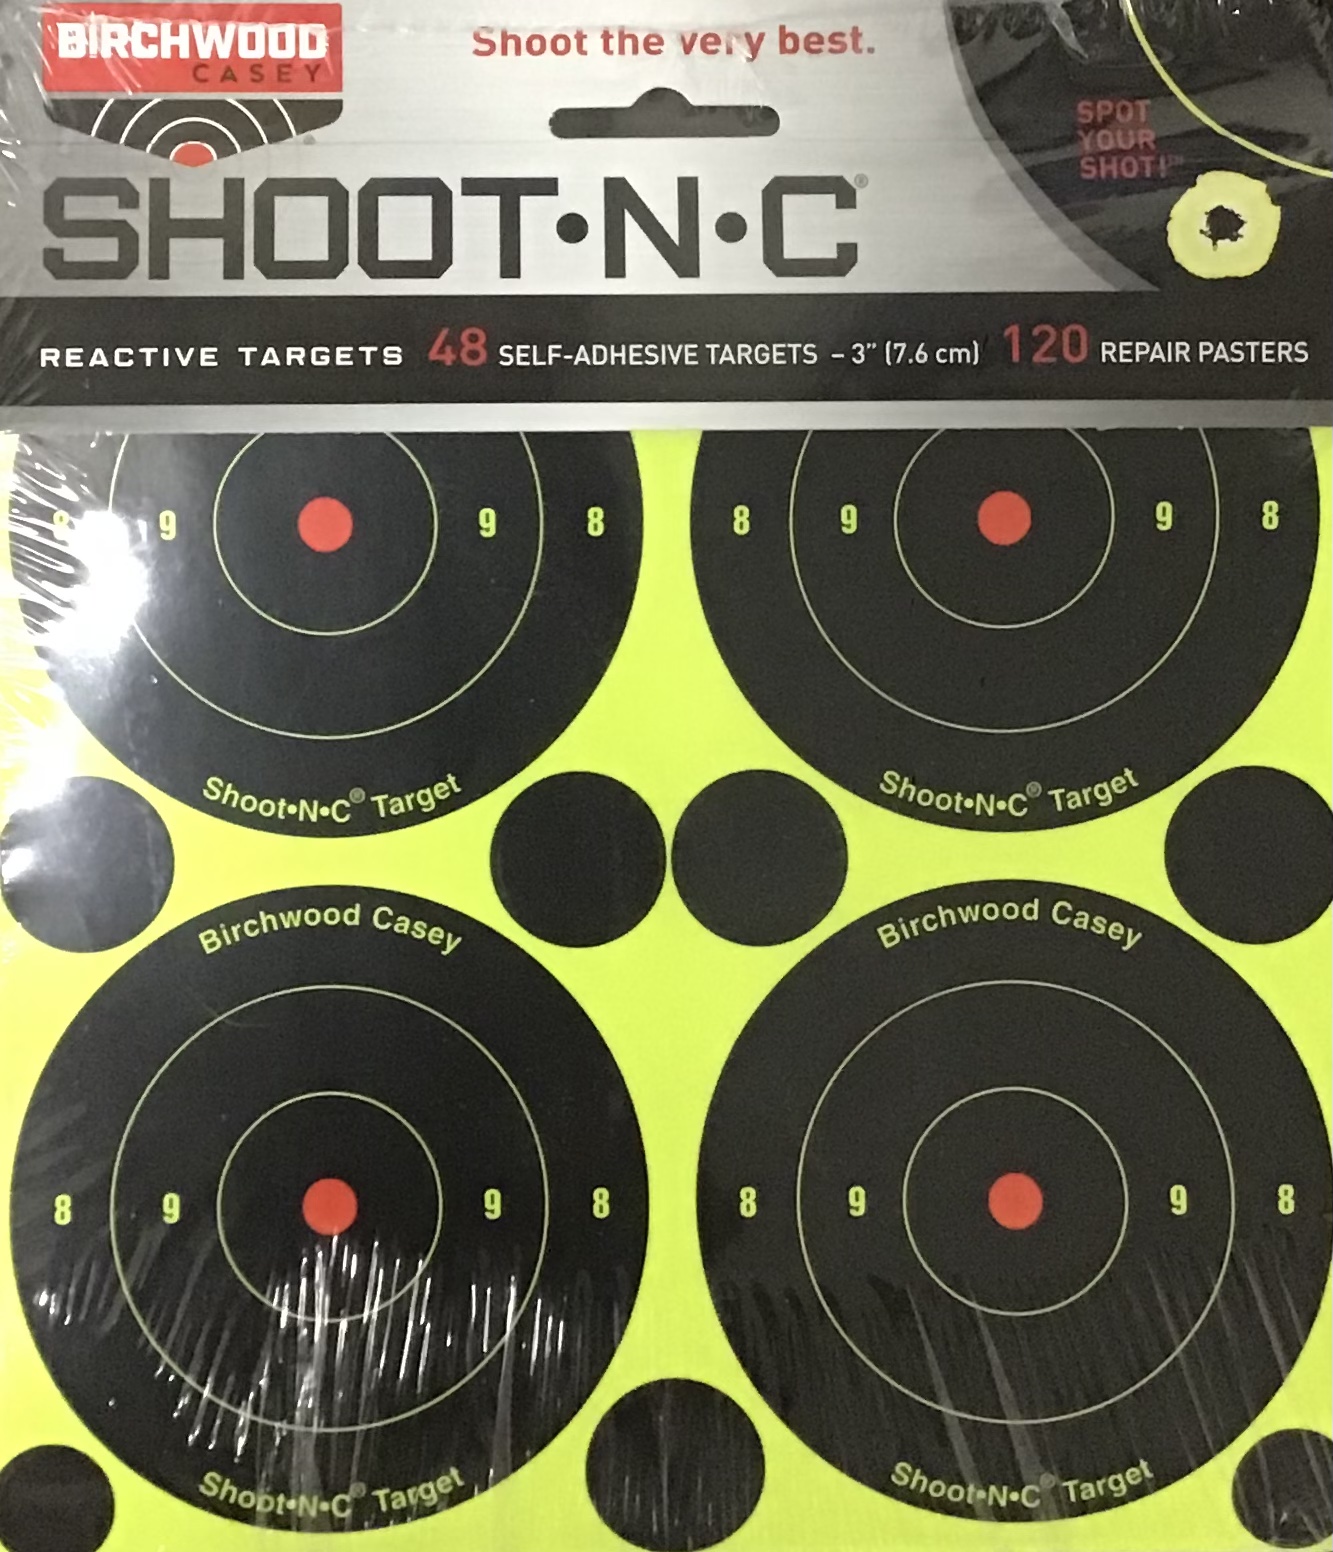 Birchwood Casey Shoot-N-C Targets 48 Self-Adhesive Targets 120 Repair Pasters M-ID: 029057343151 UPC: 029057343151